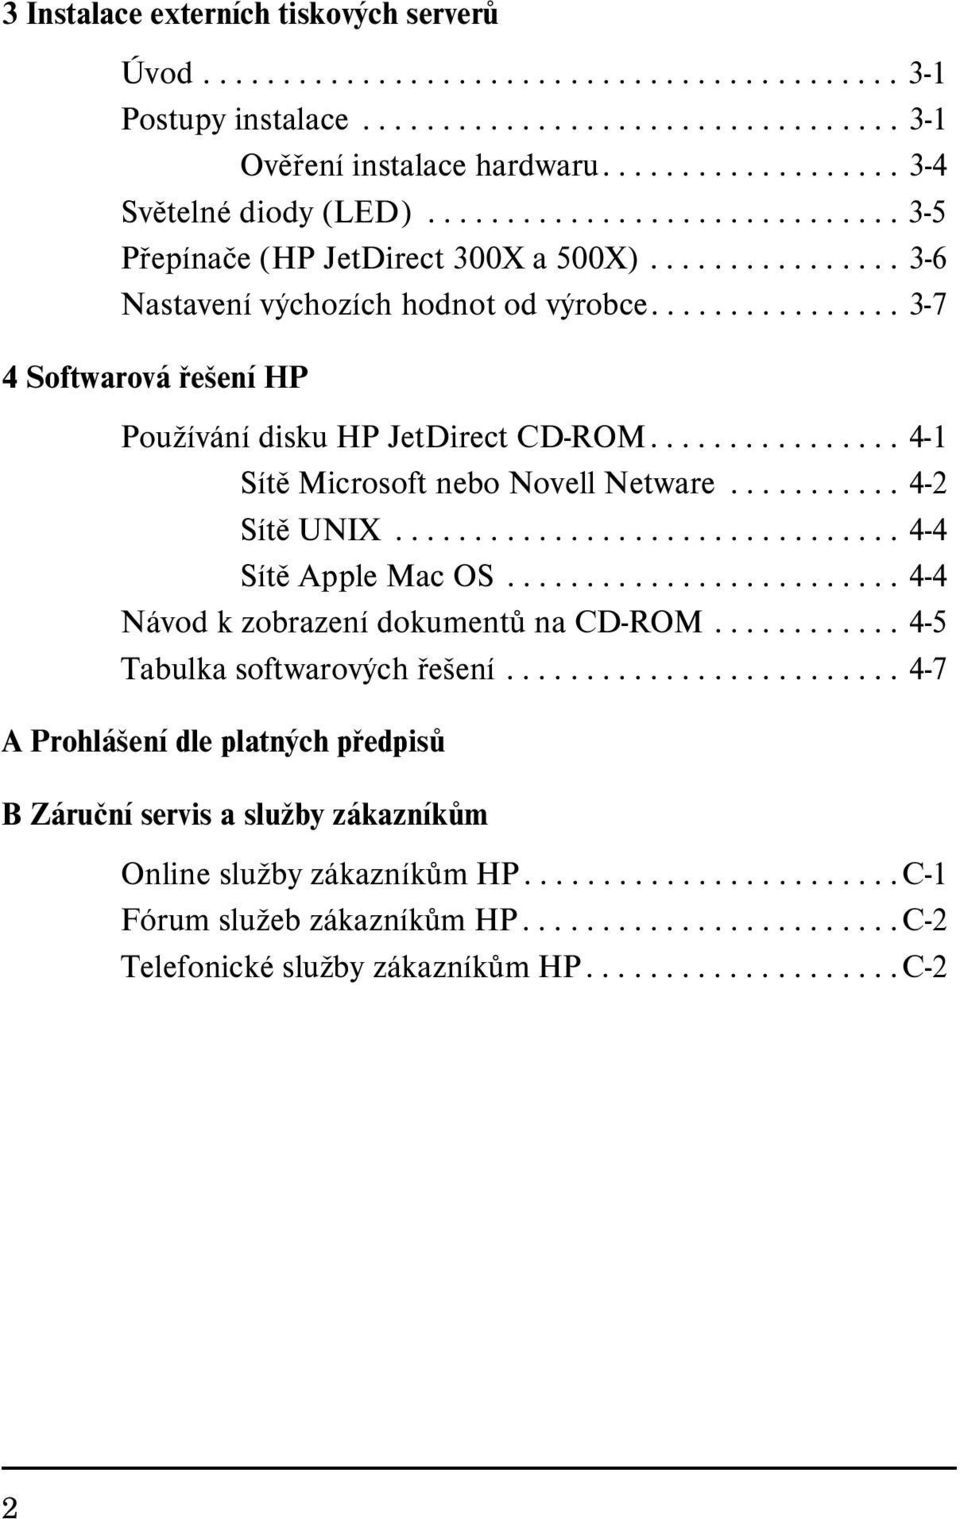 ............... 3-7 4 Softwarová řešení HP Používání disku HP JetDirect CD-ROM................ 4-1 Sítě Microsoft nebo Novell Netware........... 4-2 Sítě UNIX................................ 4-4 Sítě Apple Mac OS.